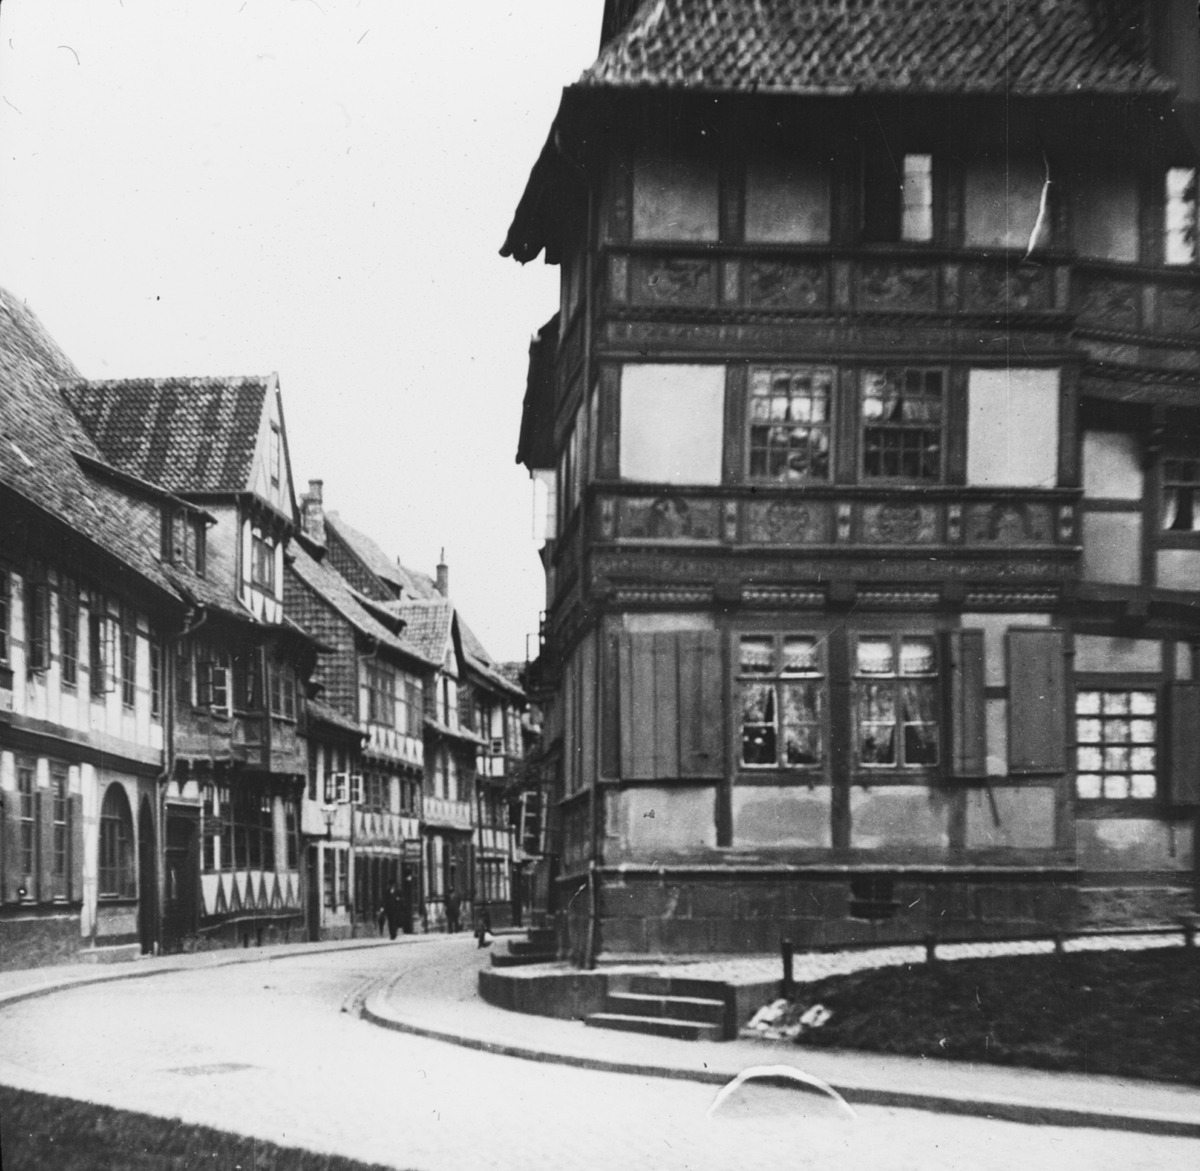 Skioptikonbild med motiv från Hildesheim.
Bilden har förvarats i kartong märkt: Vårresan 1909. Hildesheim 9. VI. Text på bild: "Hinter Brühl".